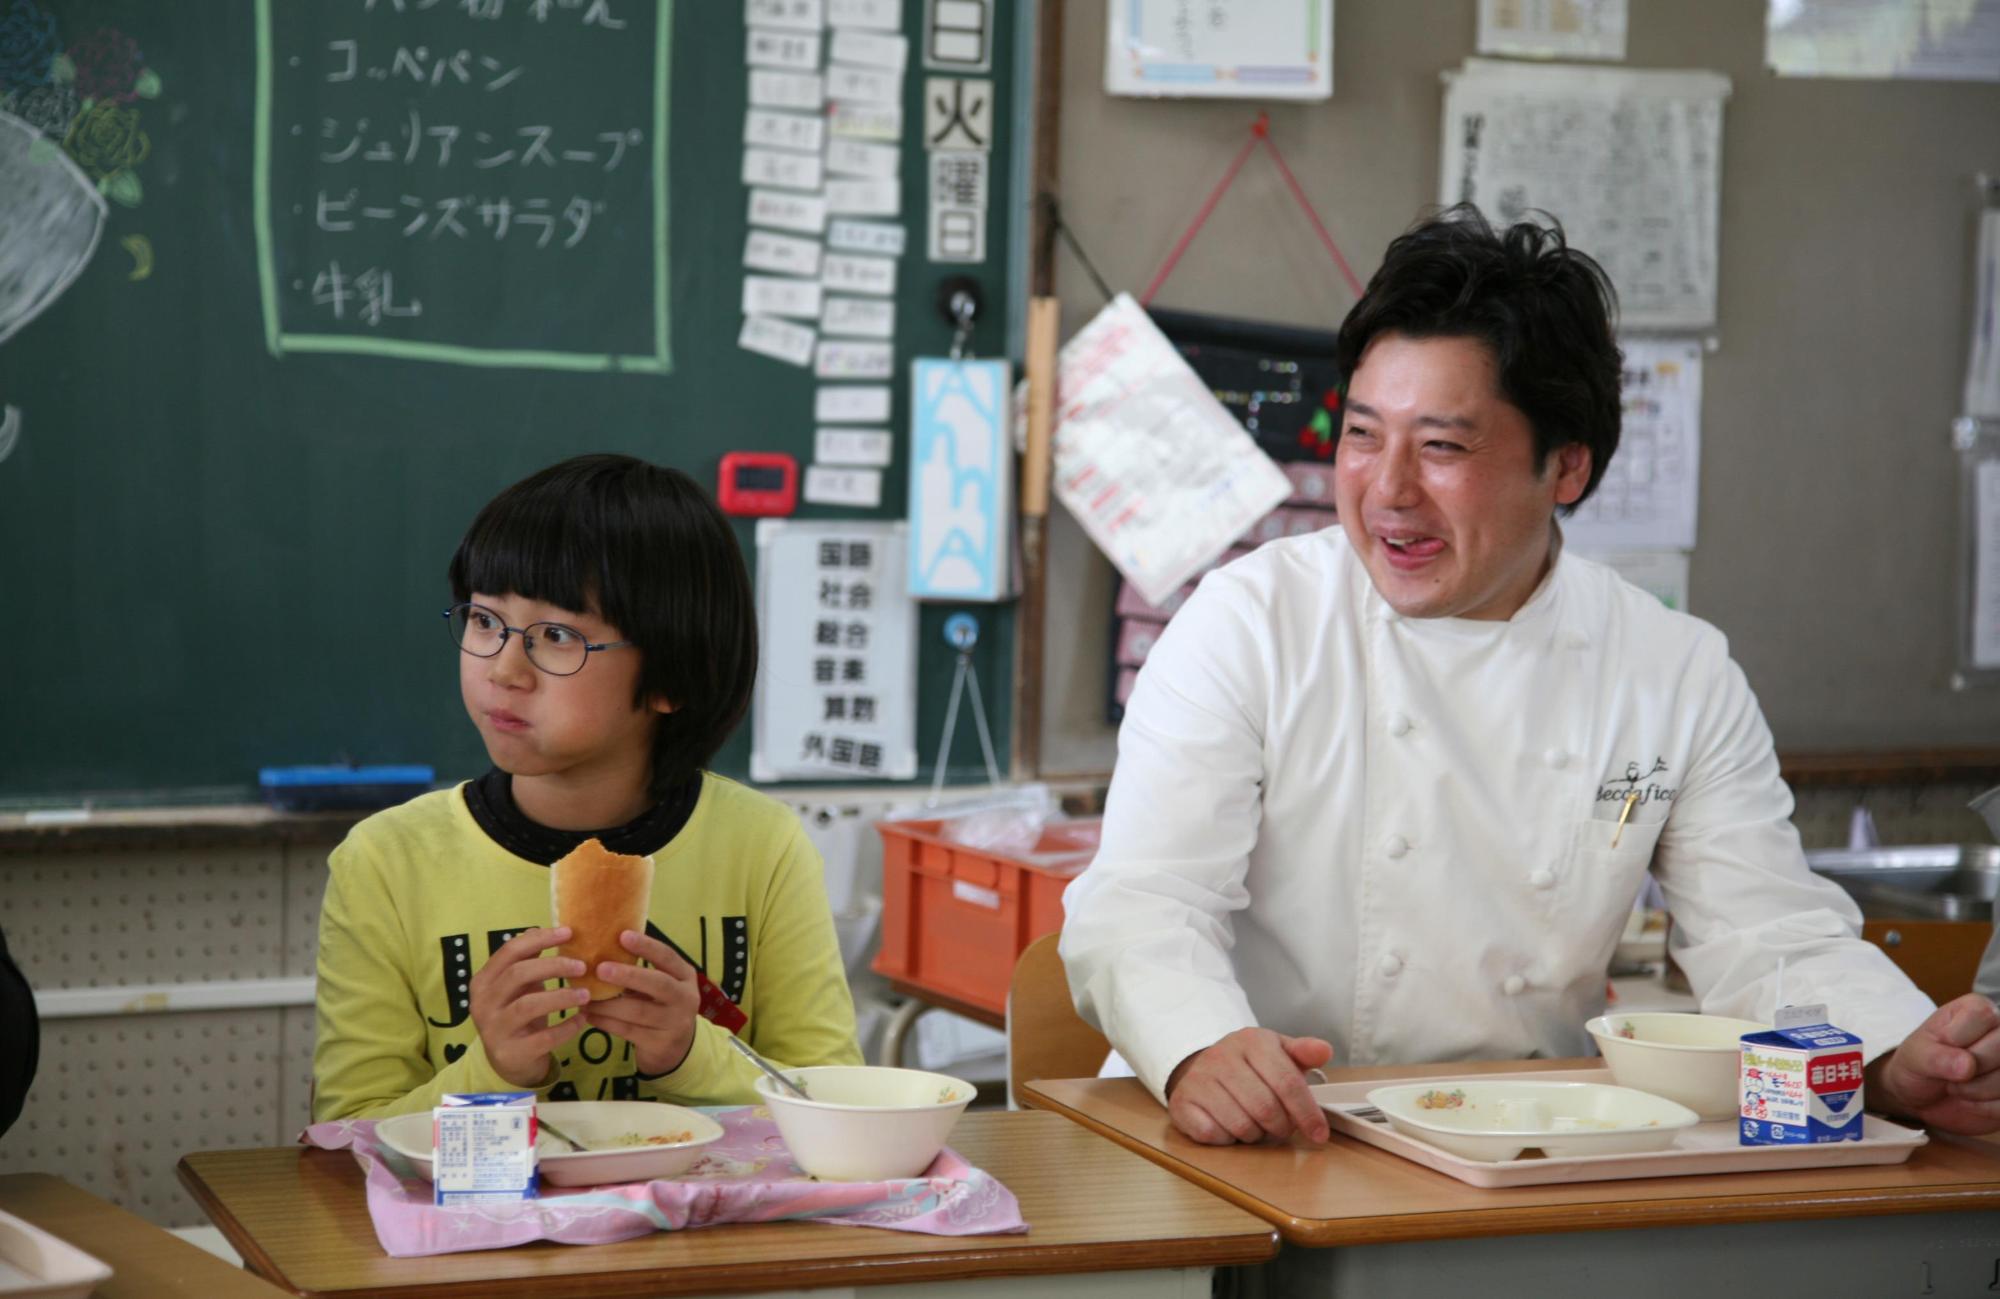 藤井シェフと子どもが楽しく給食を食べる様子の写真